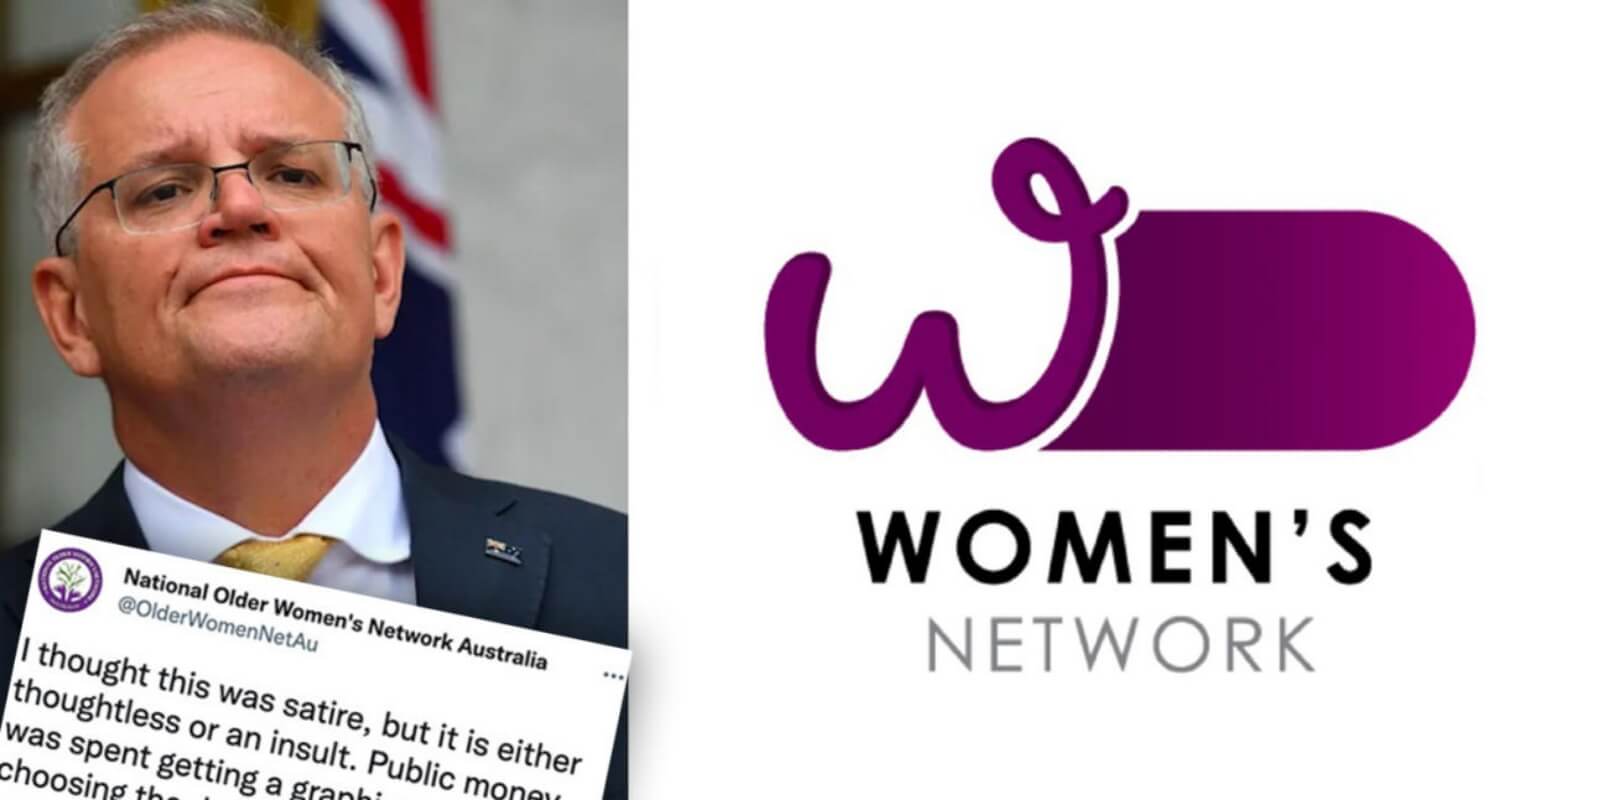 Women's network branding disaster